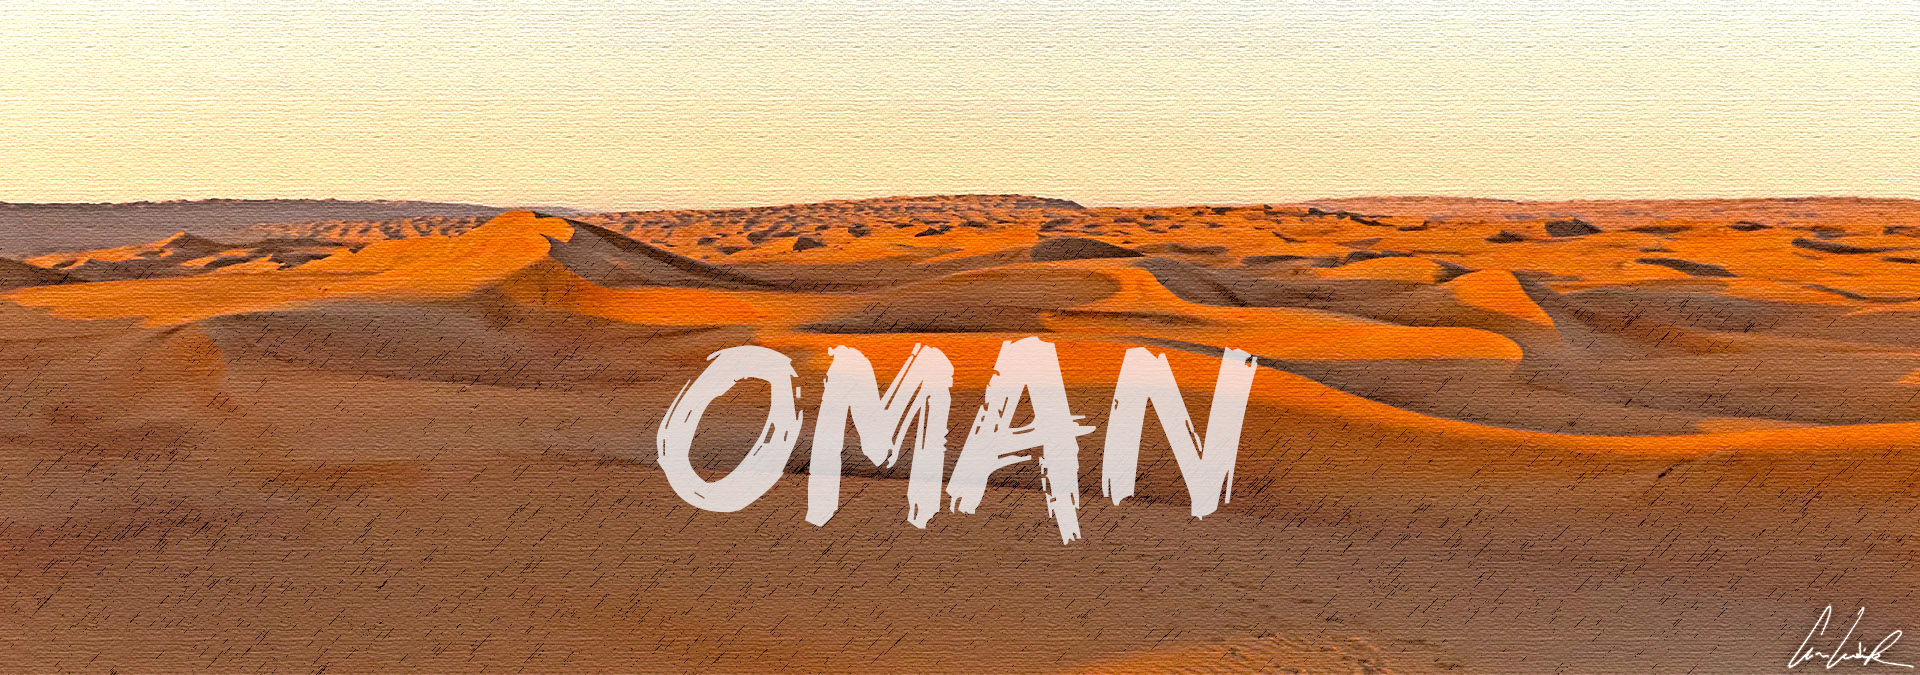 Le Sultanat d'Oman: Terre de traditions ancestrales et d'échanges mais aussi de déserts de sable et de vallées verdoyantes.